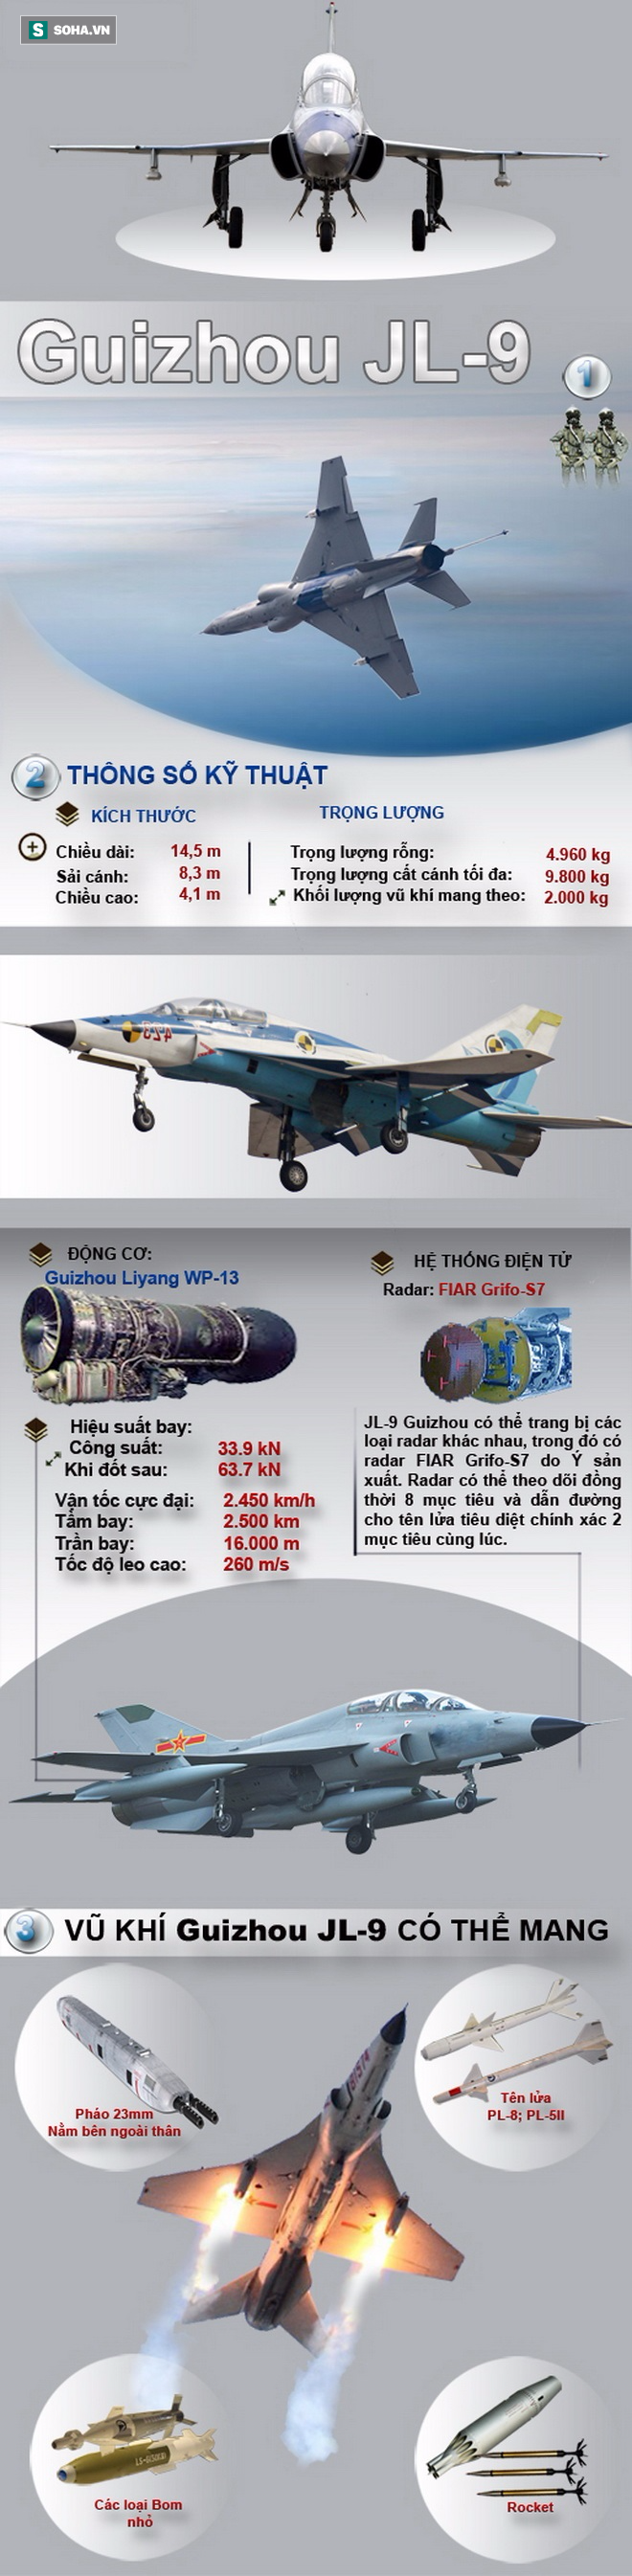 Chiếc máy bay huấn luyện siêu âm phát triển từ MiG-21 của Trung Quốc có gì đặc biệt? - Ảnh 1.